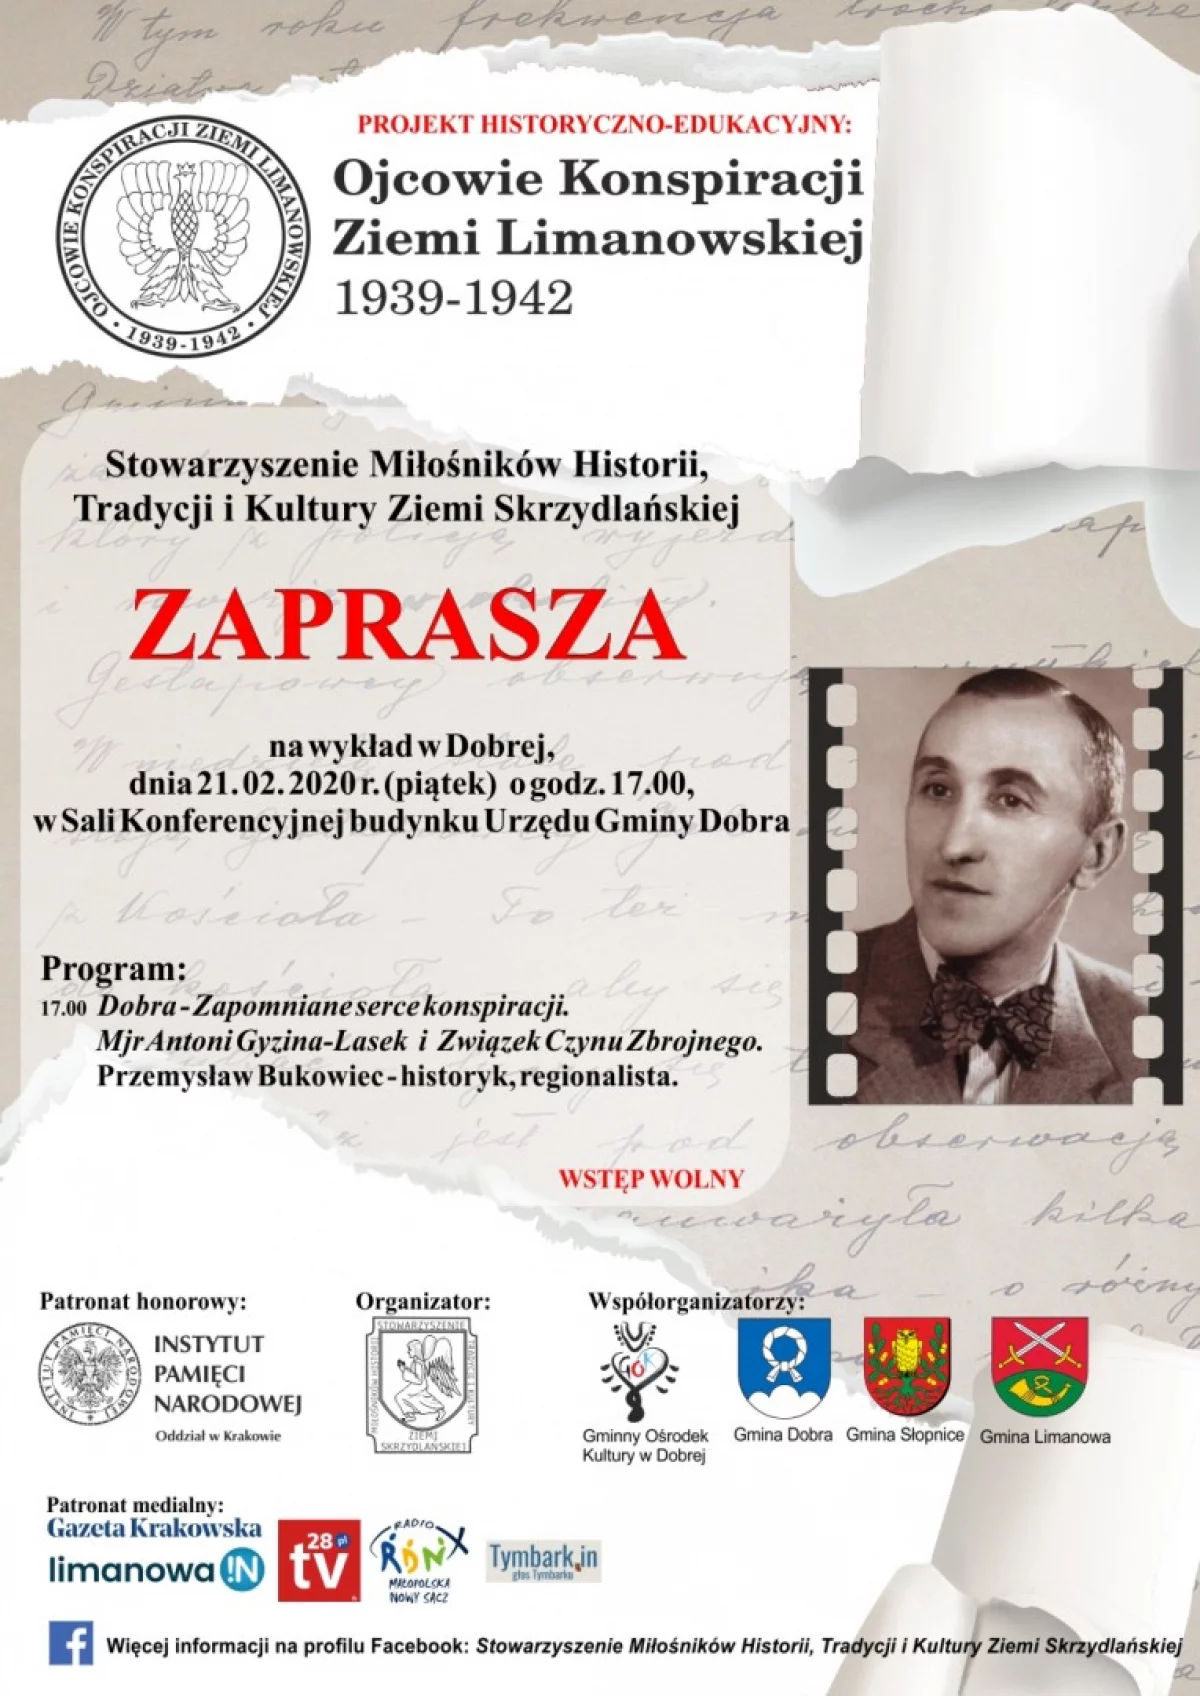 Projekt "Ojcowie konspiracji Ziemi Limanowskiej 1939-1942" - 21 lutego wykład w Dobrej 